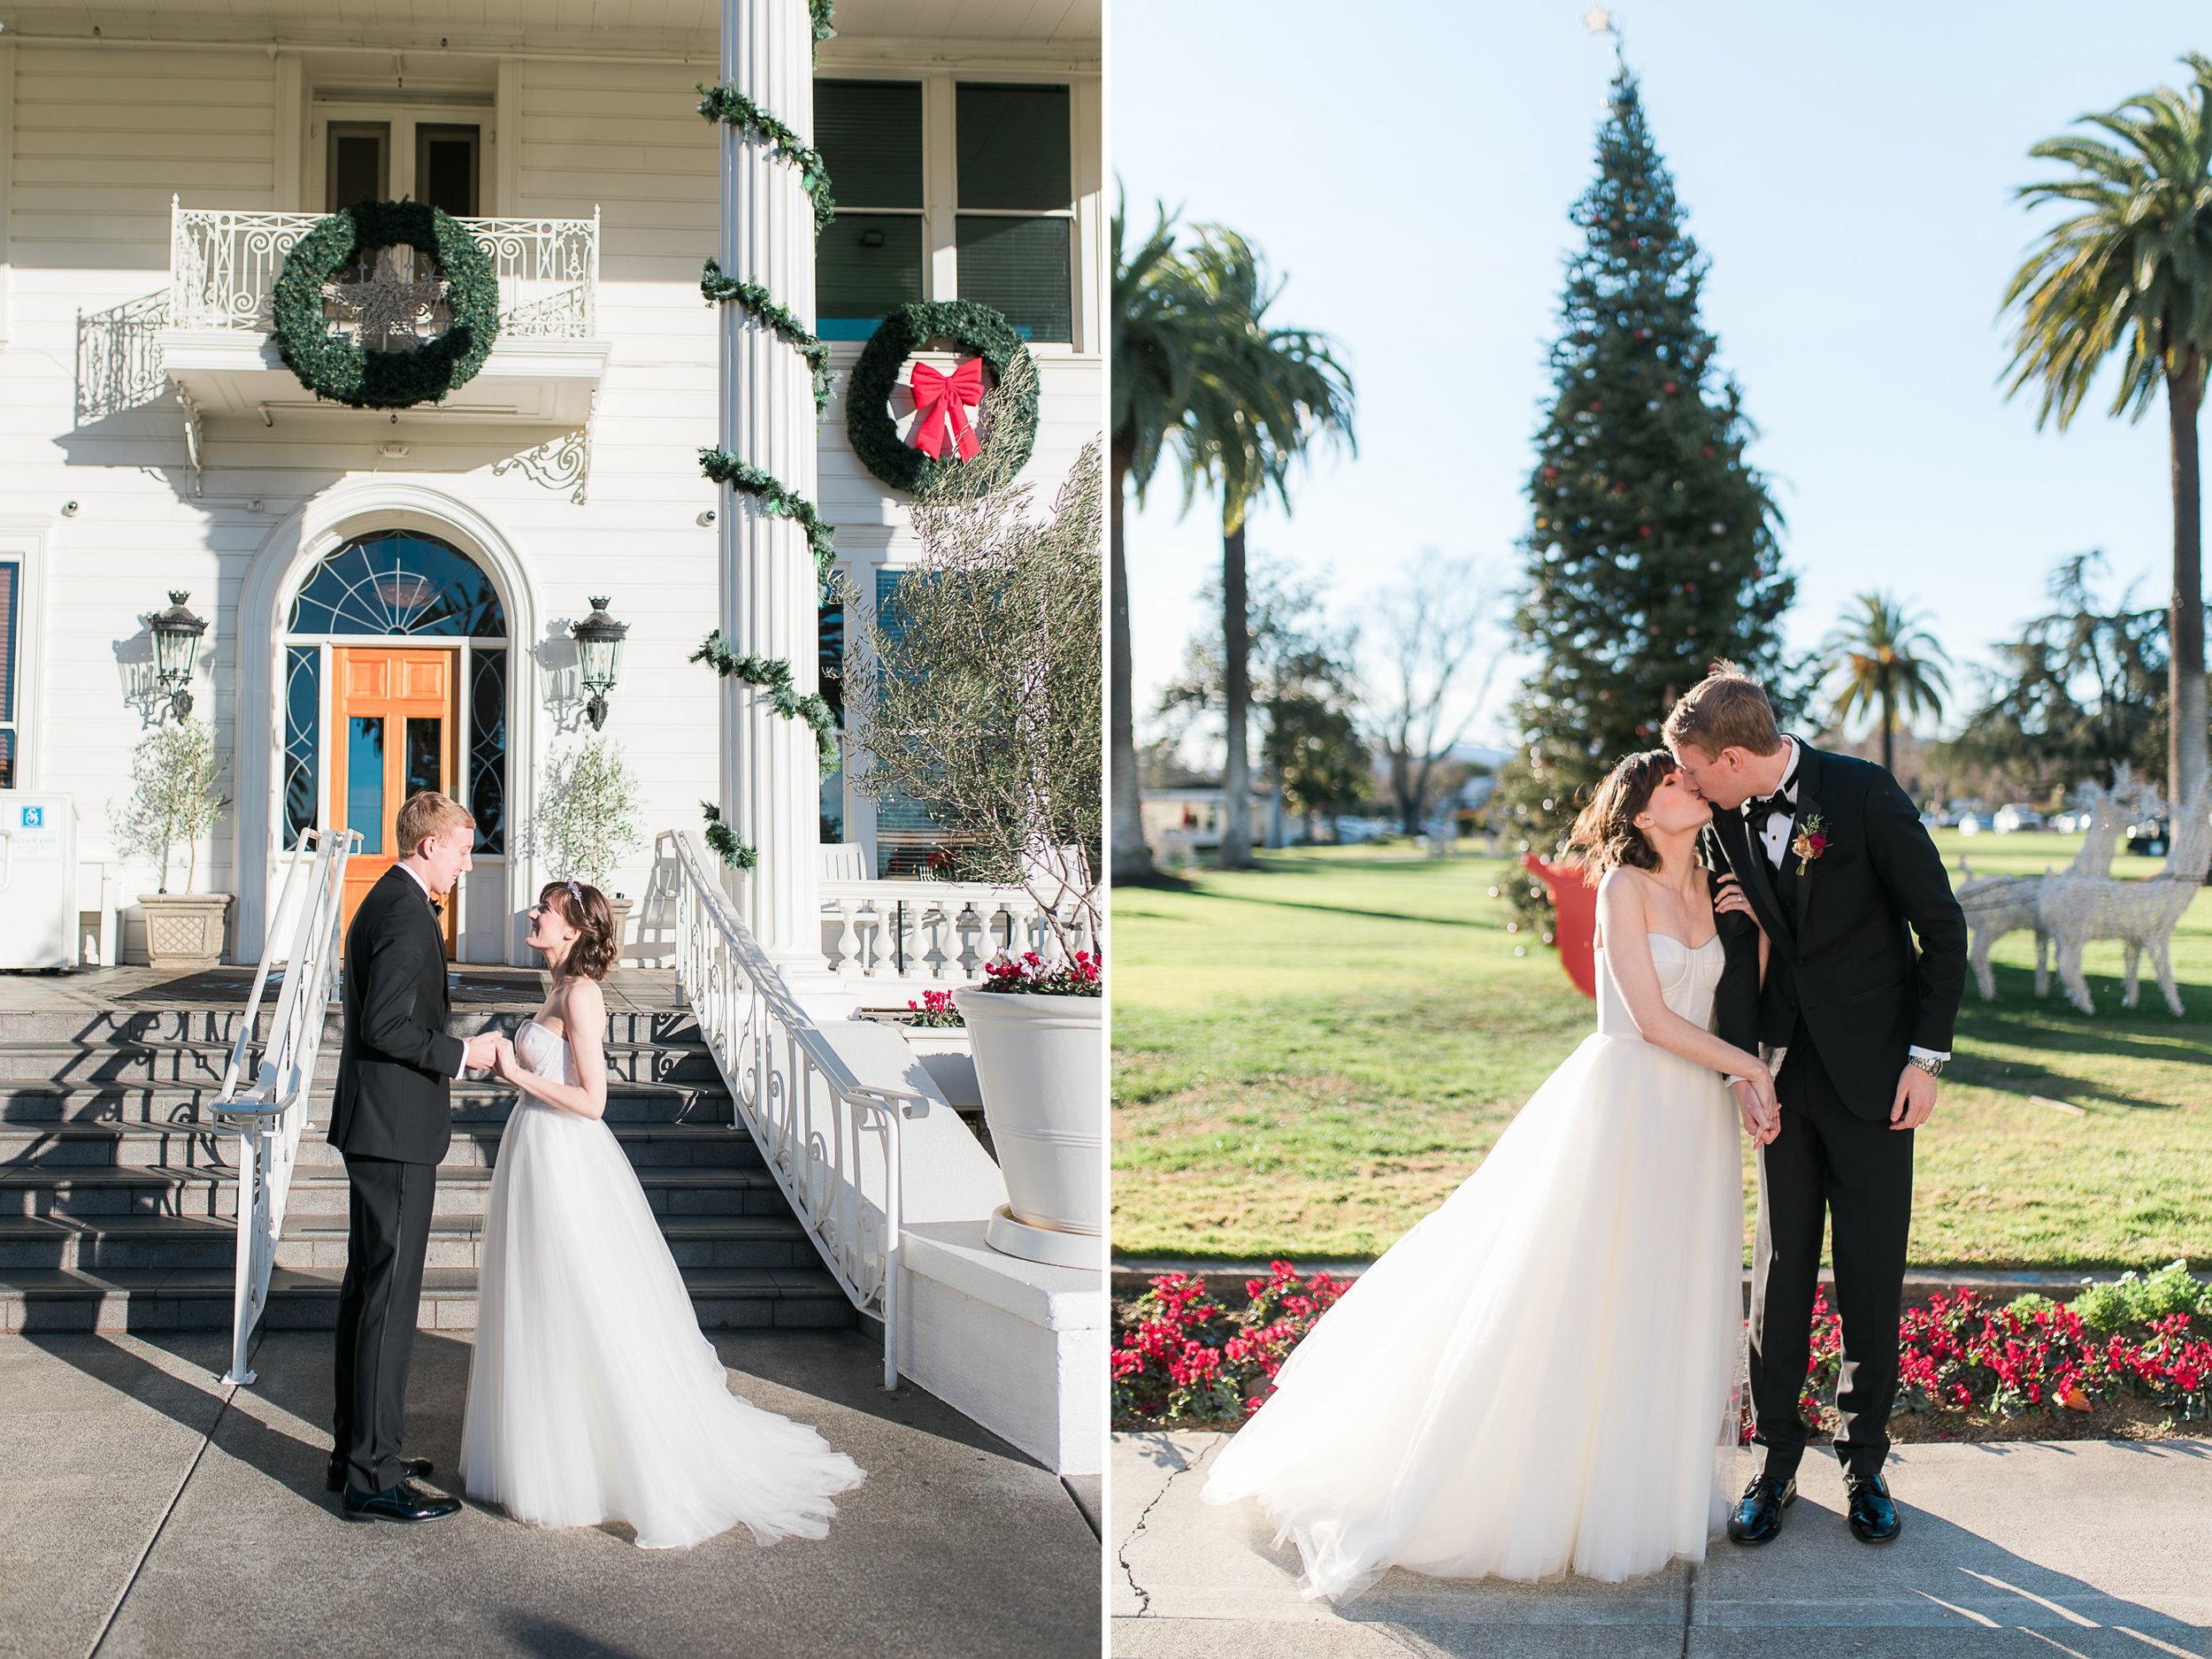 Silverado Wedding Photos - Napa Wedding Photographer - JBJ Pictures - Silverado Napa Winter Wedding (15).jpg